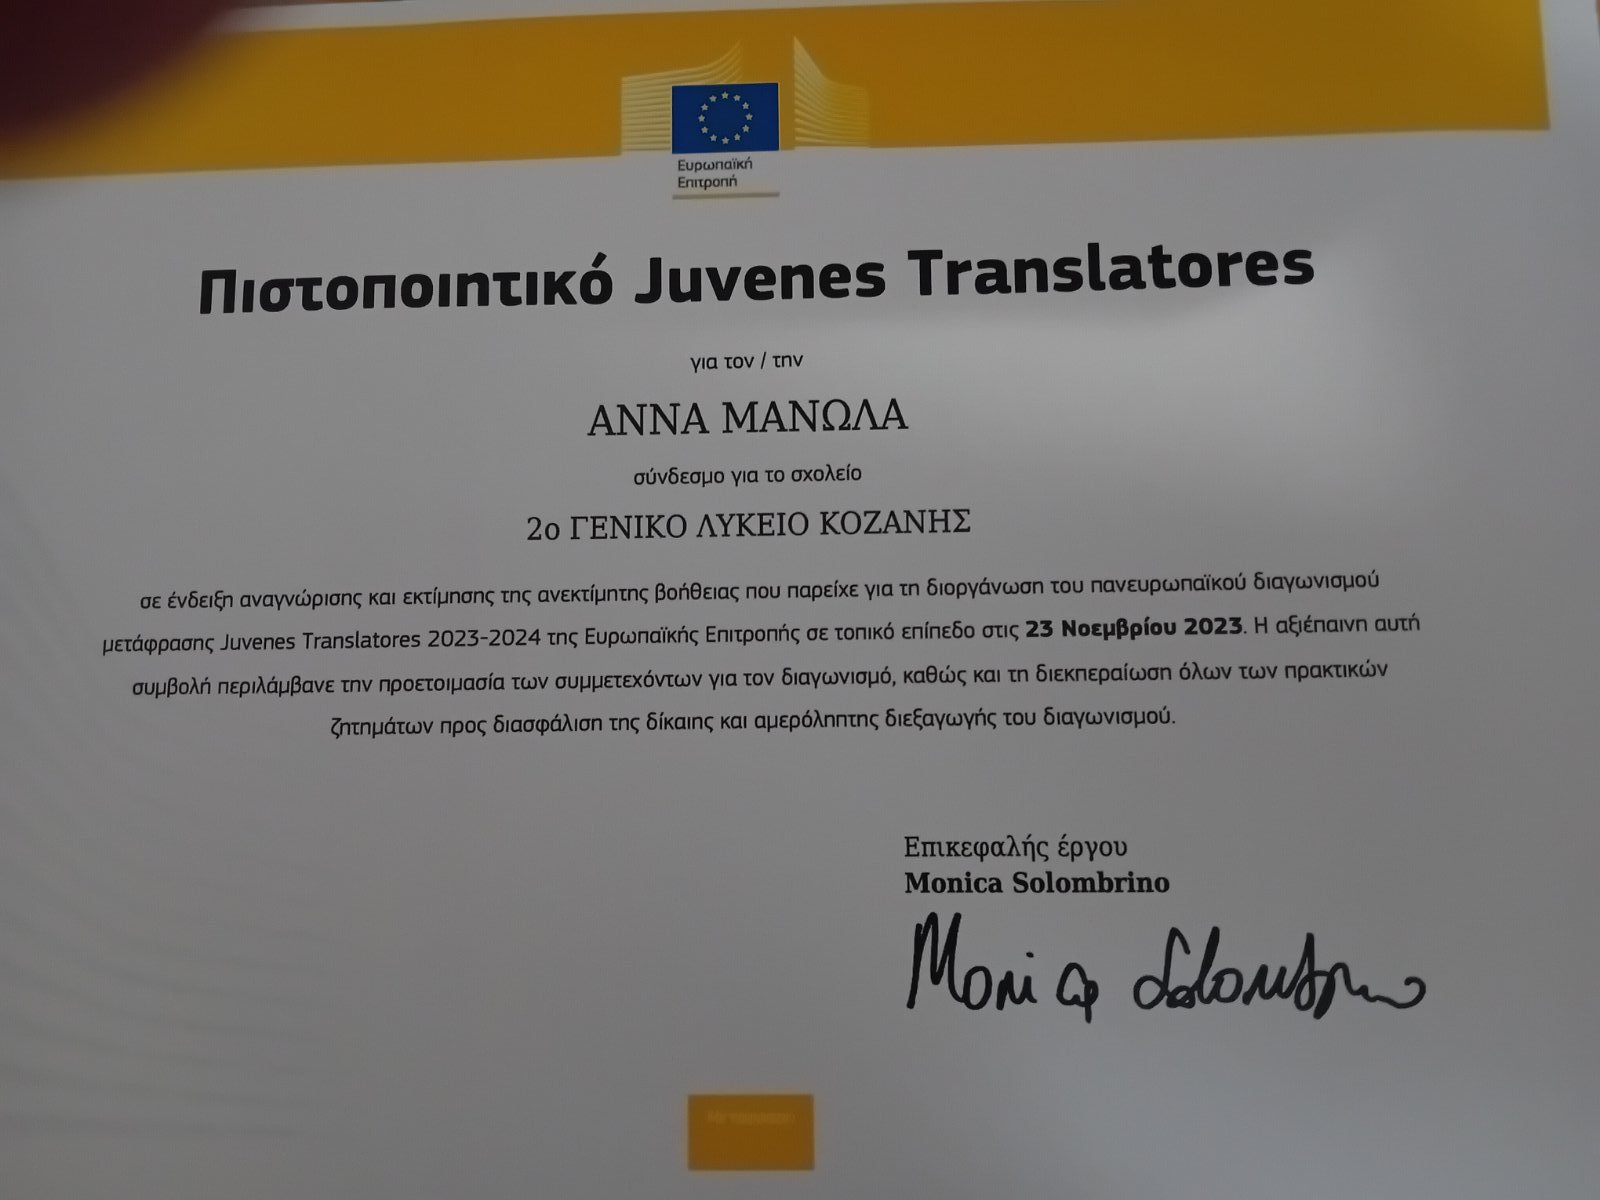 Συμμετοχή του σχολείου μας στον πανευρωπαϊκό διαδικτυακό διαγωνισμό μετάφρασης Juvenes Translatores 2023-2024